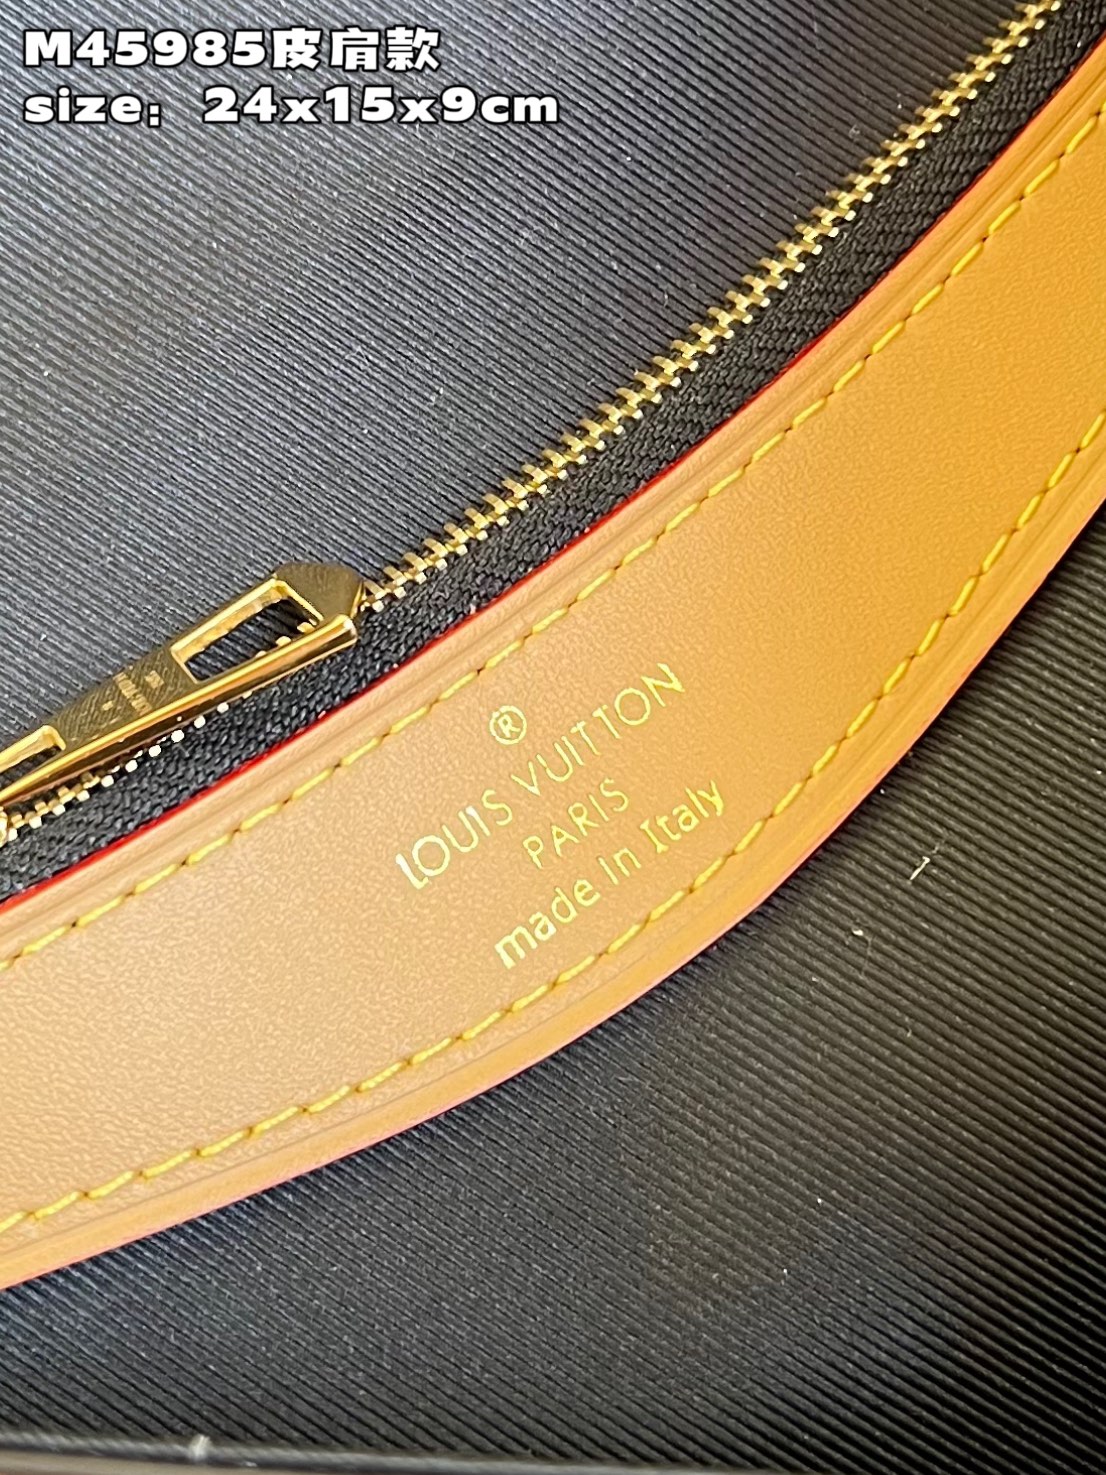 顶级原单M45985皮肩款Diane手袋重塑1990年代的经典设计为Monogram帆布包身融入皮革包角